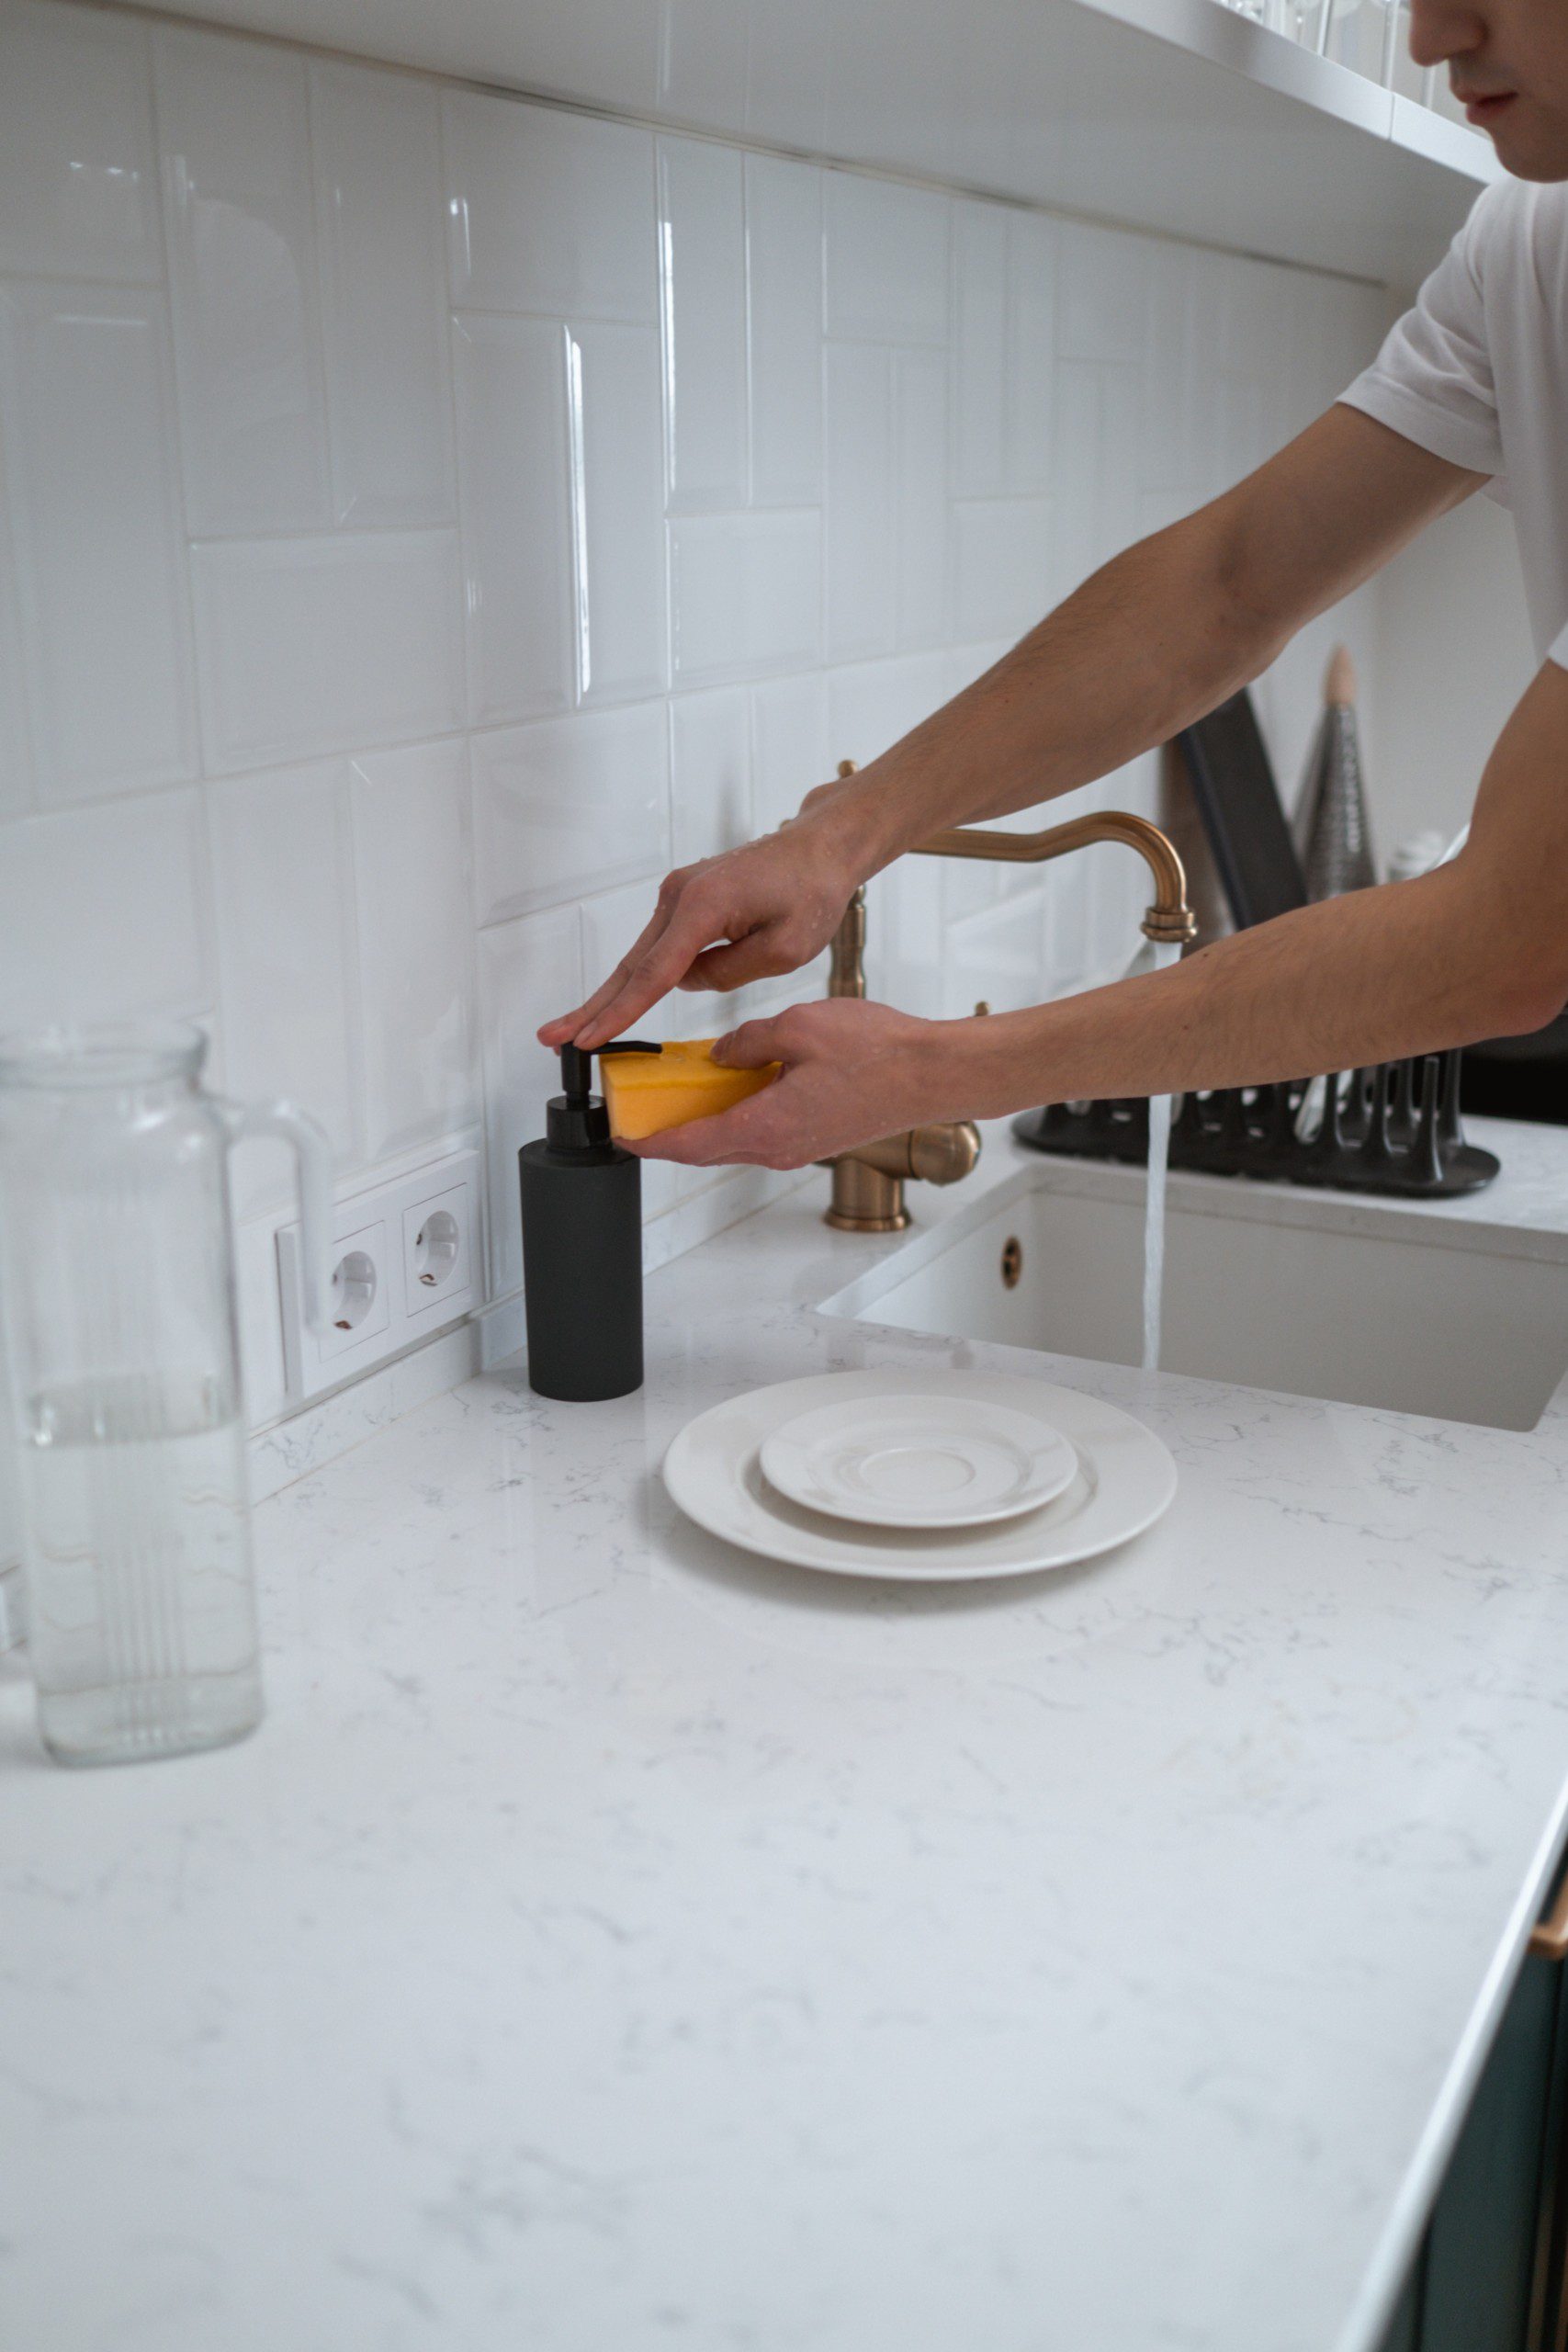 Imagem de uma cozinha com azulejos brancos e uma pessoa lavando um prato de porcelana branca com detergente caseiro.